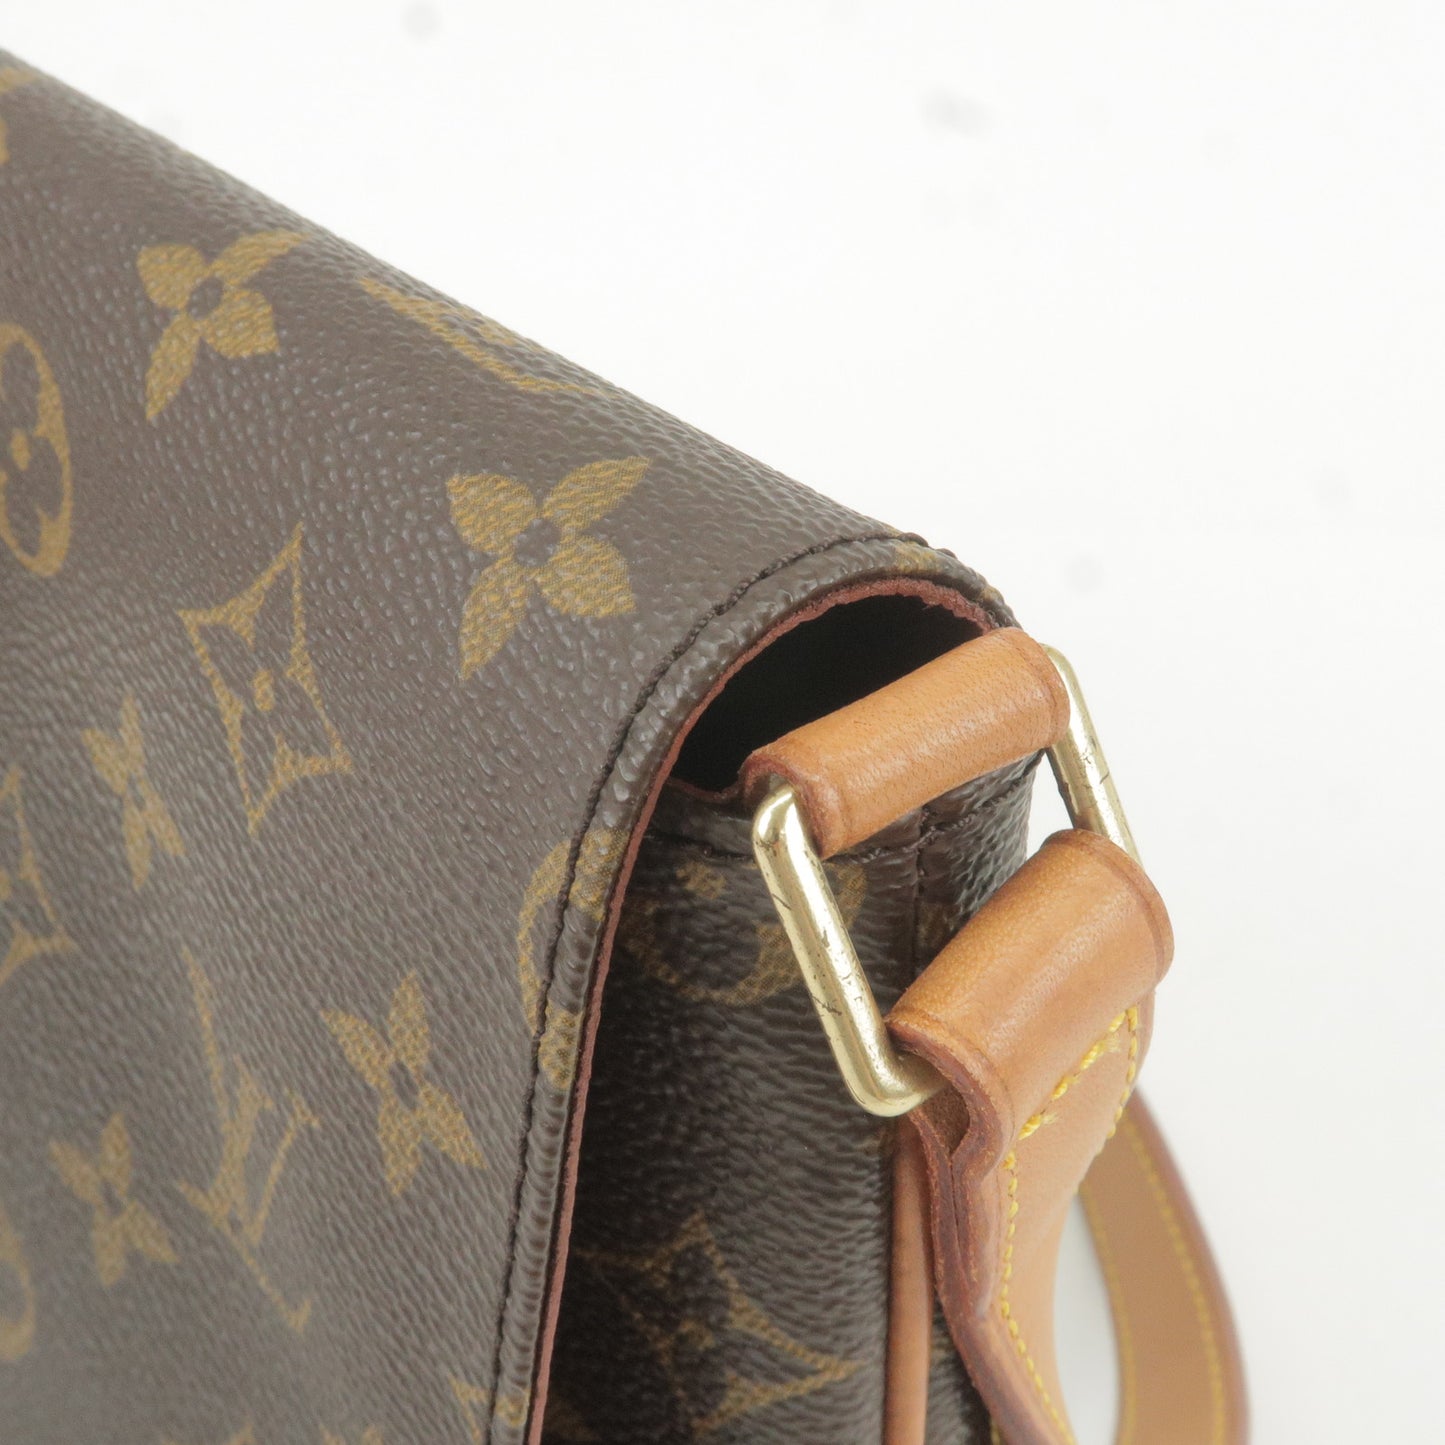 Louis Vuitton Musette Tango Shoulder Bag